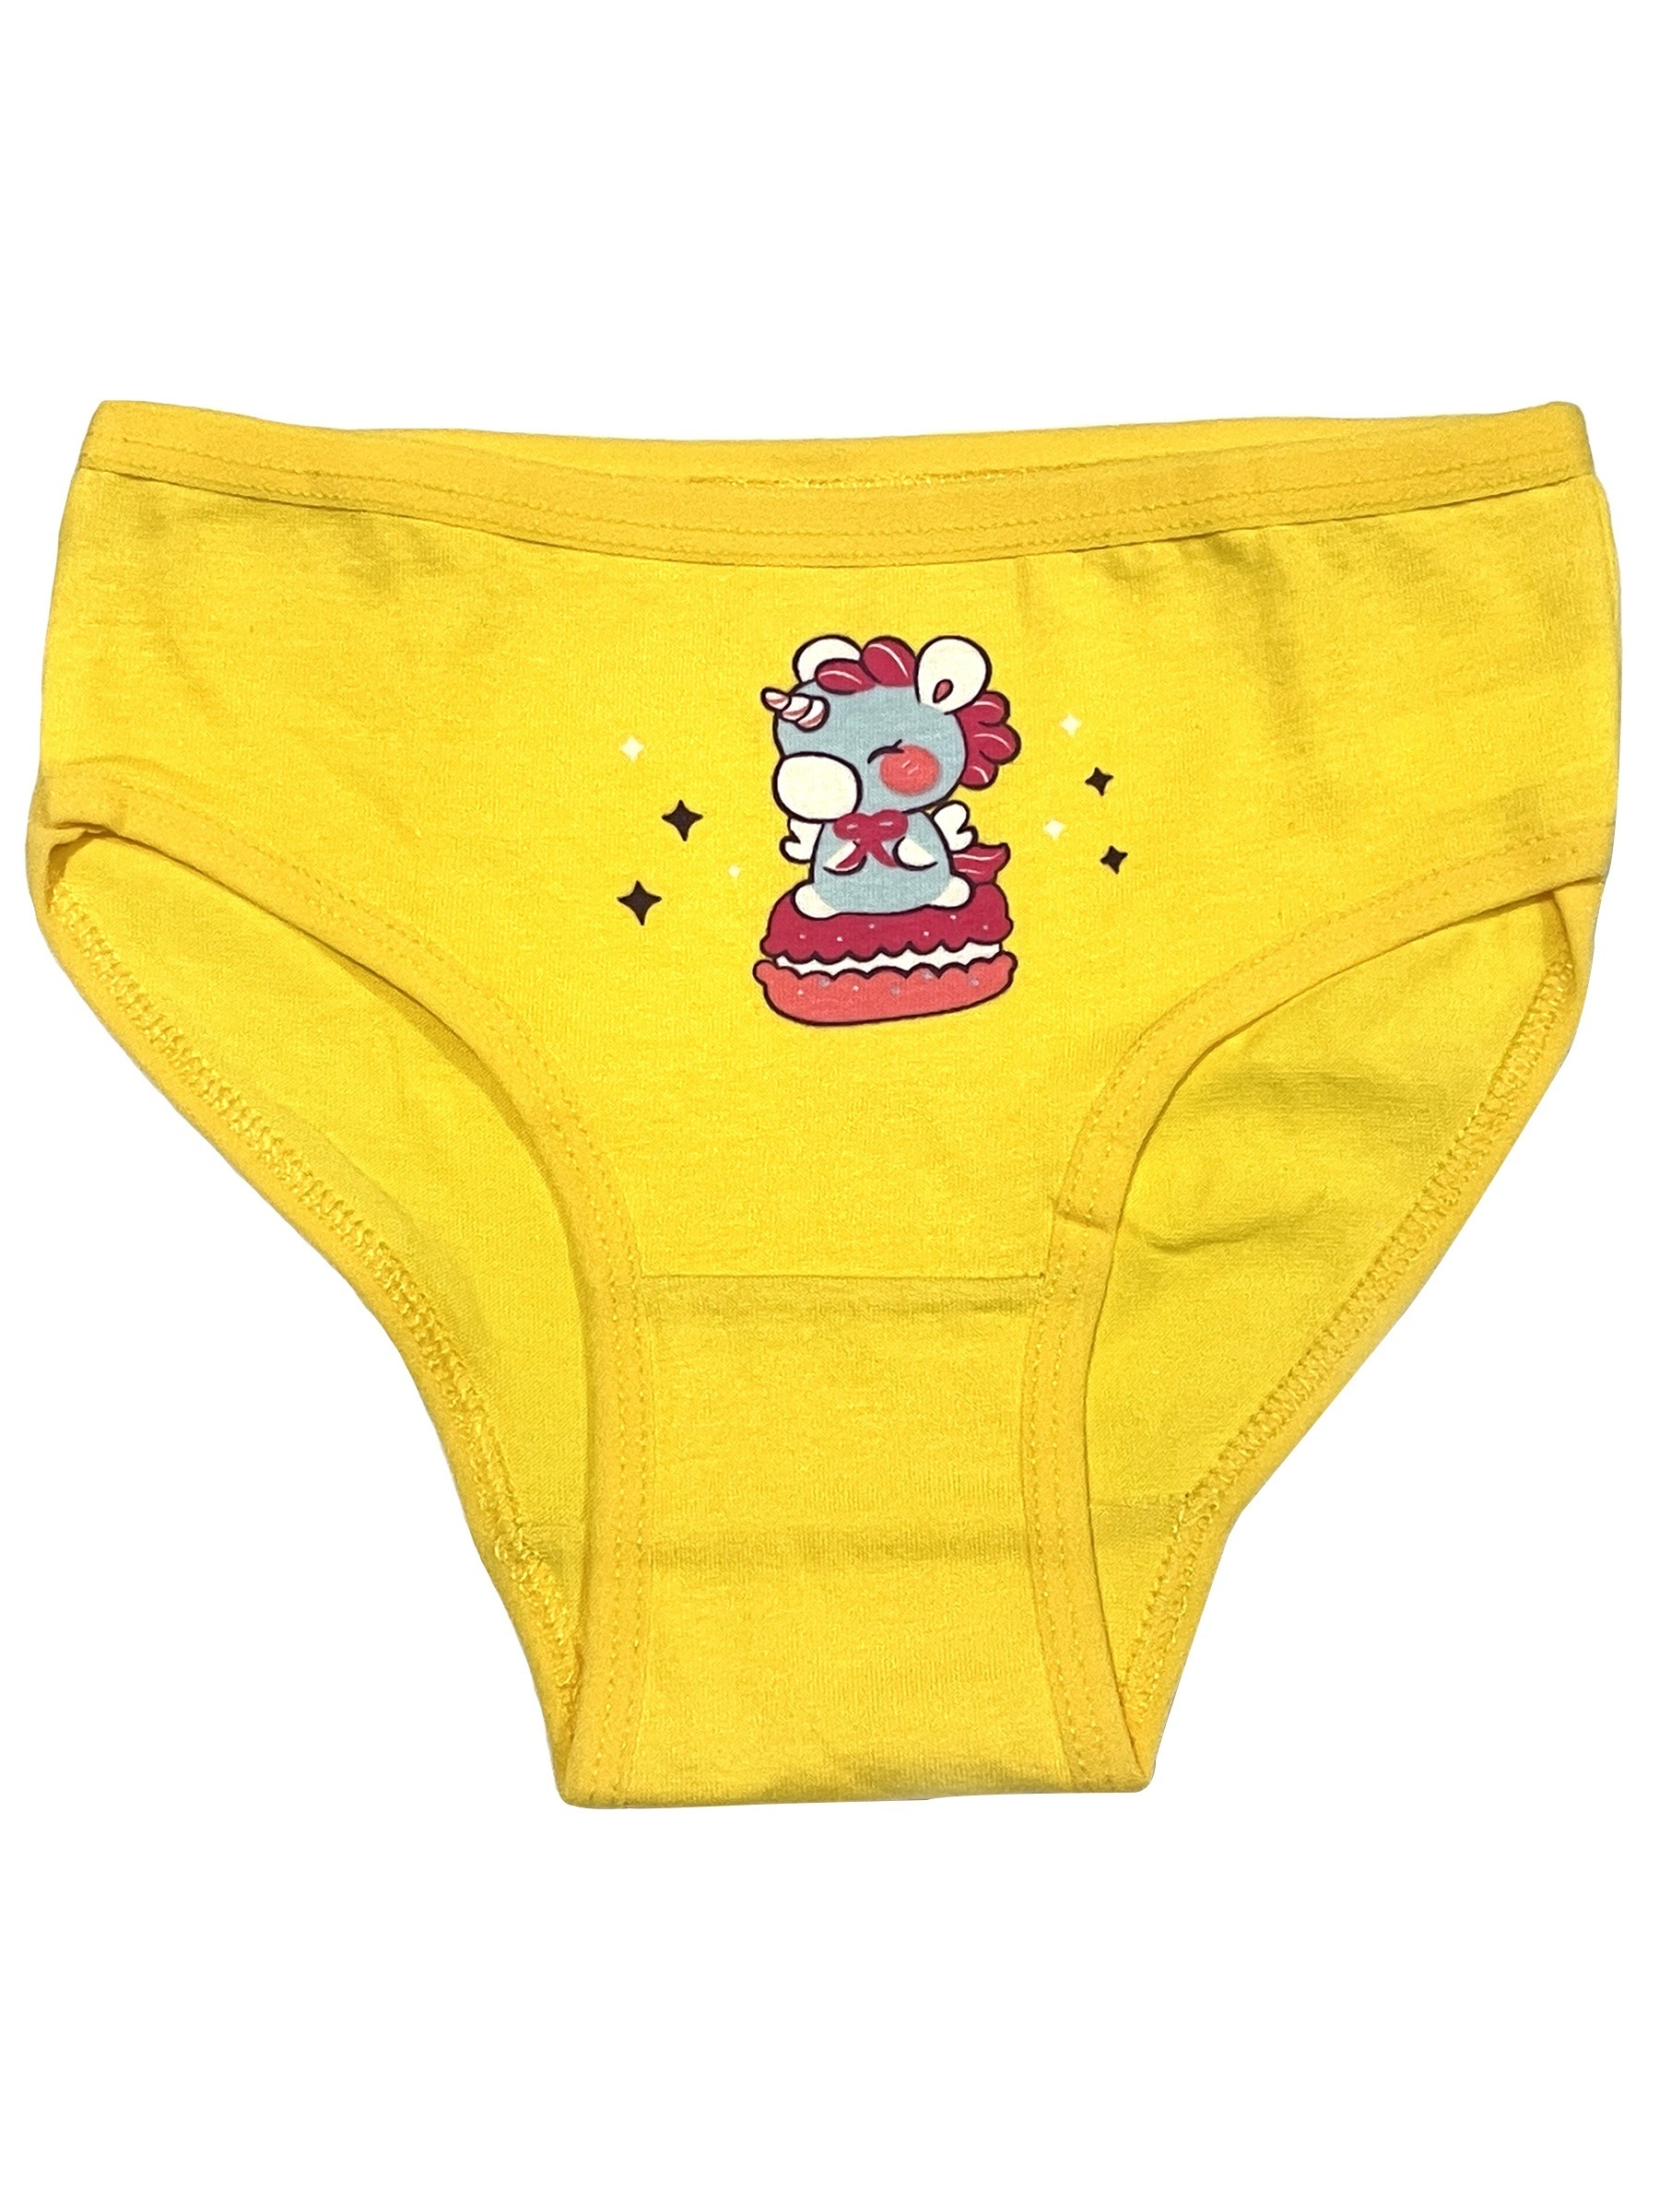 Cute Little Girl Underwear On Yellow Stock Photo 1581745789